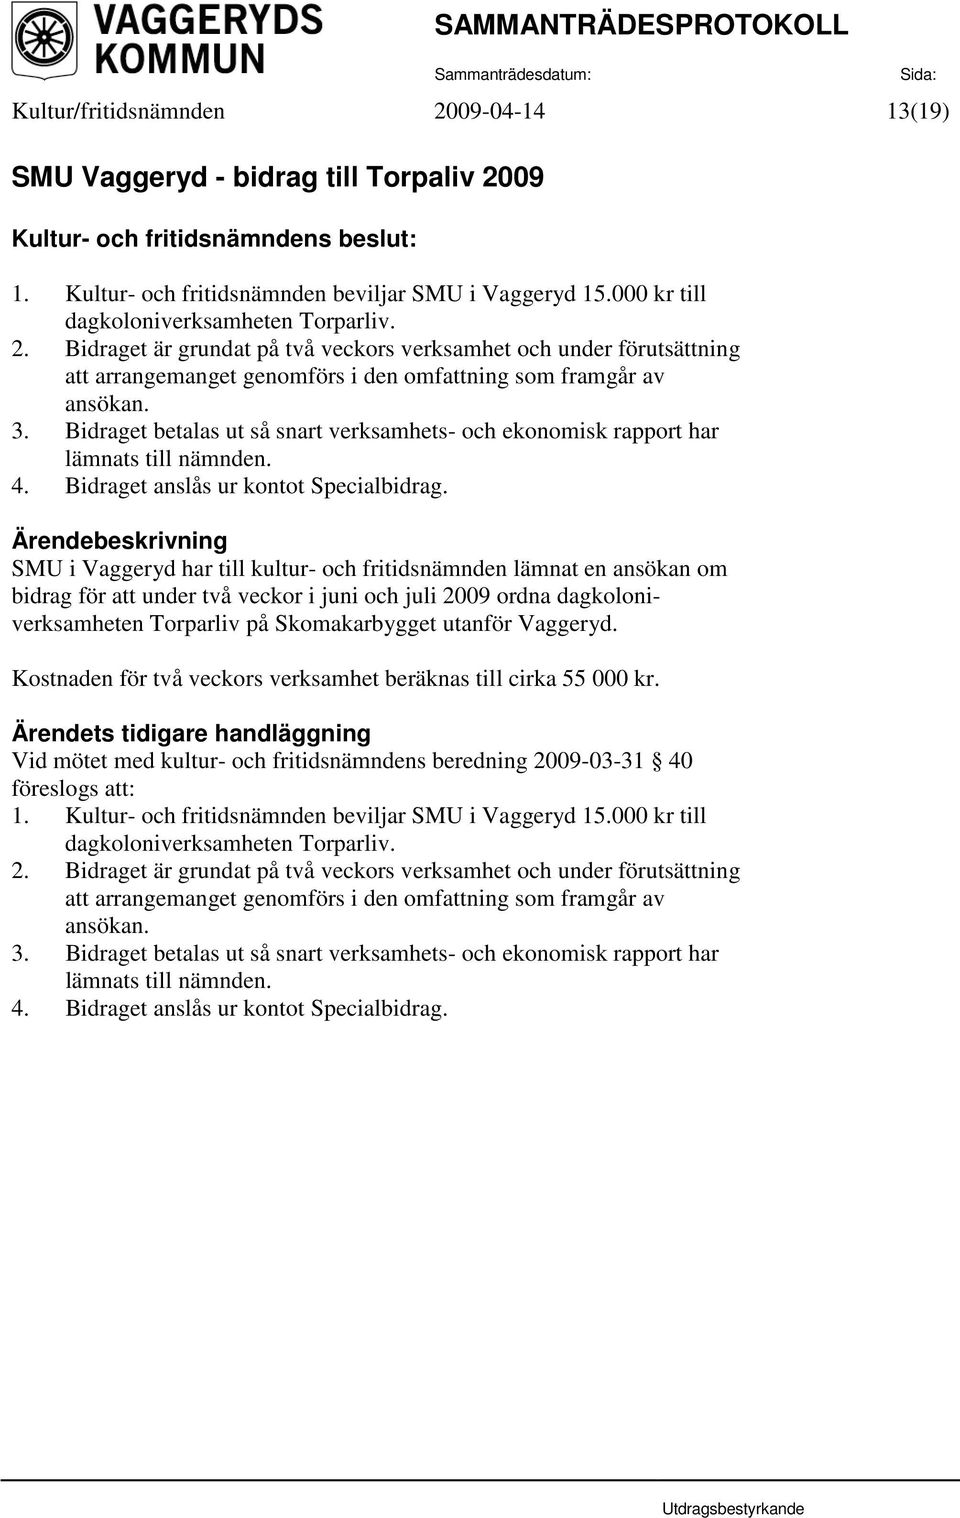 SMU i Vaggeryd har till kultur- och fritidsnämnden lämnat en ansökan om bidrag för att under två veckor i juni och juli 2009 ordna dagkoloniverksamheten Torparliv på Skomakarbygget utanför Vaggeryd.